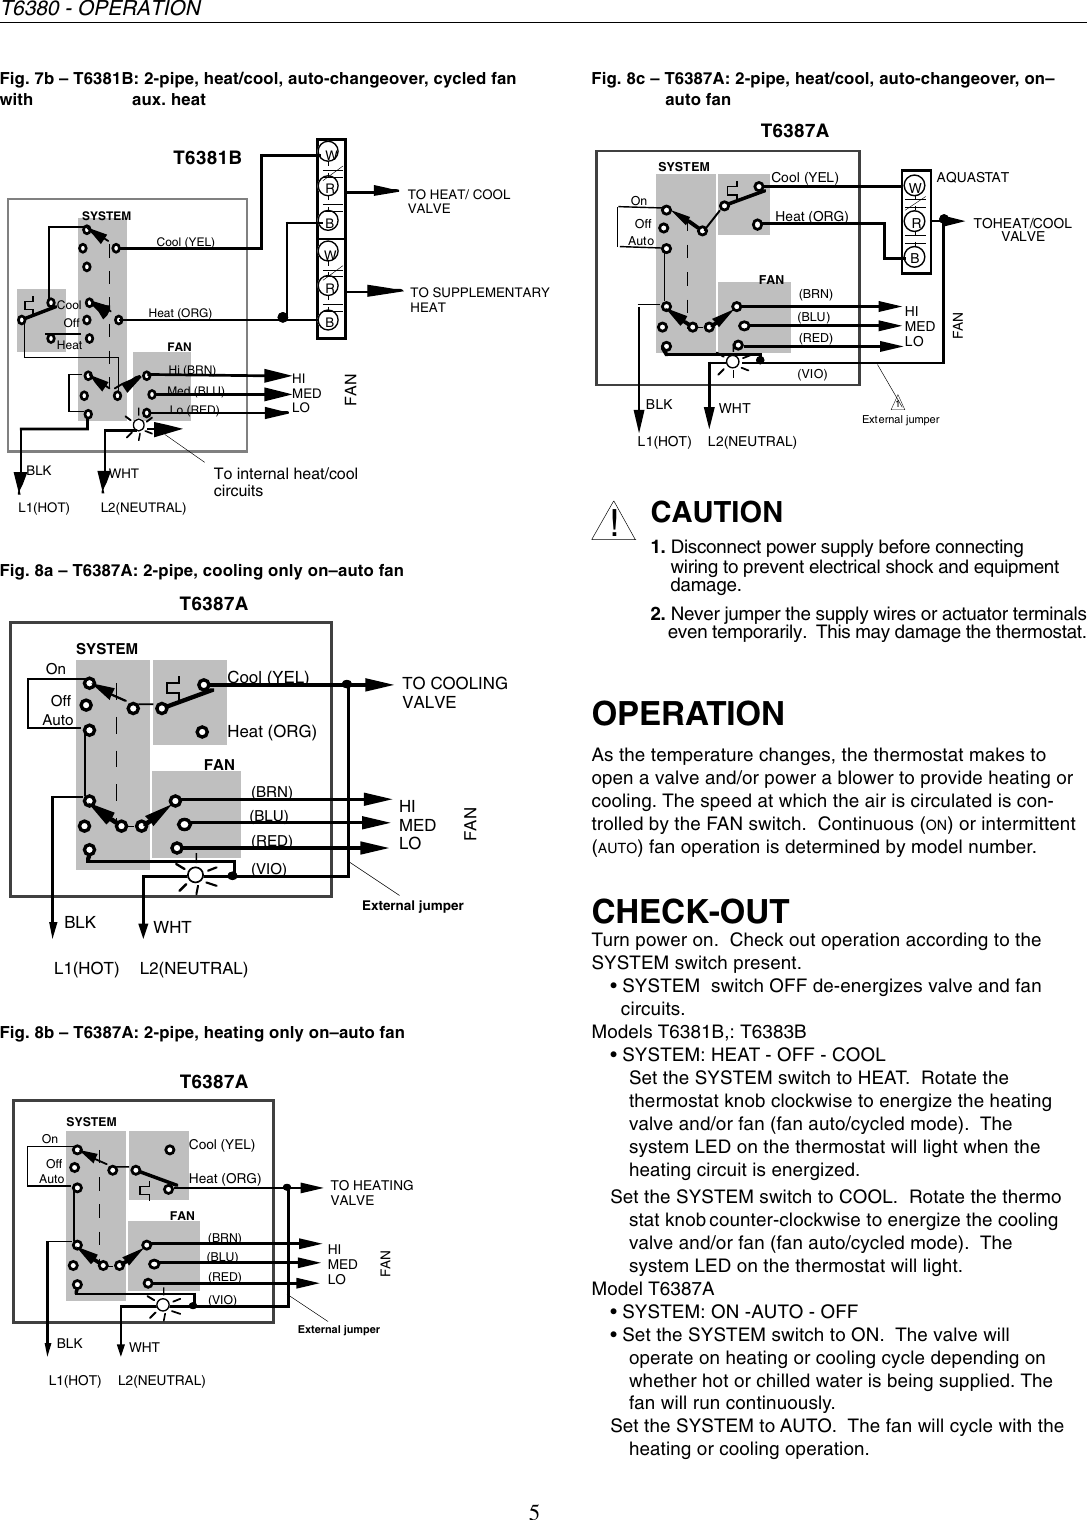 Page 5 of 6 - Honeywell Honeywell-Electronic-Fan-Coil-T6380-Users-Manual- 95C-10758 - T6380 Series Electronic Fan Coil Thernostat  Honeywell-electronic-fan-coil-t6380-users-manual